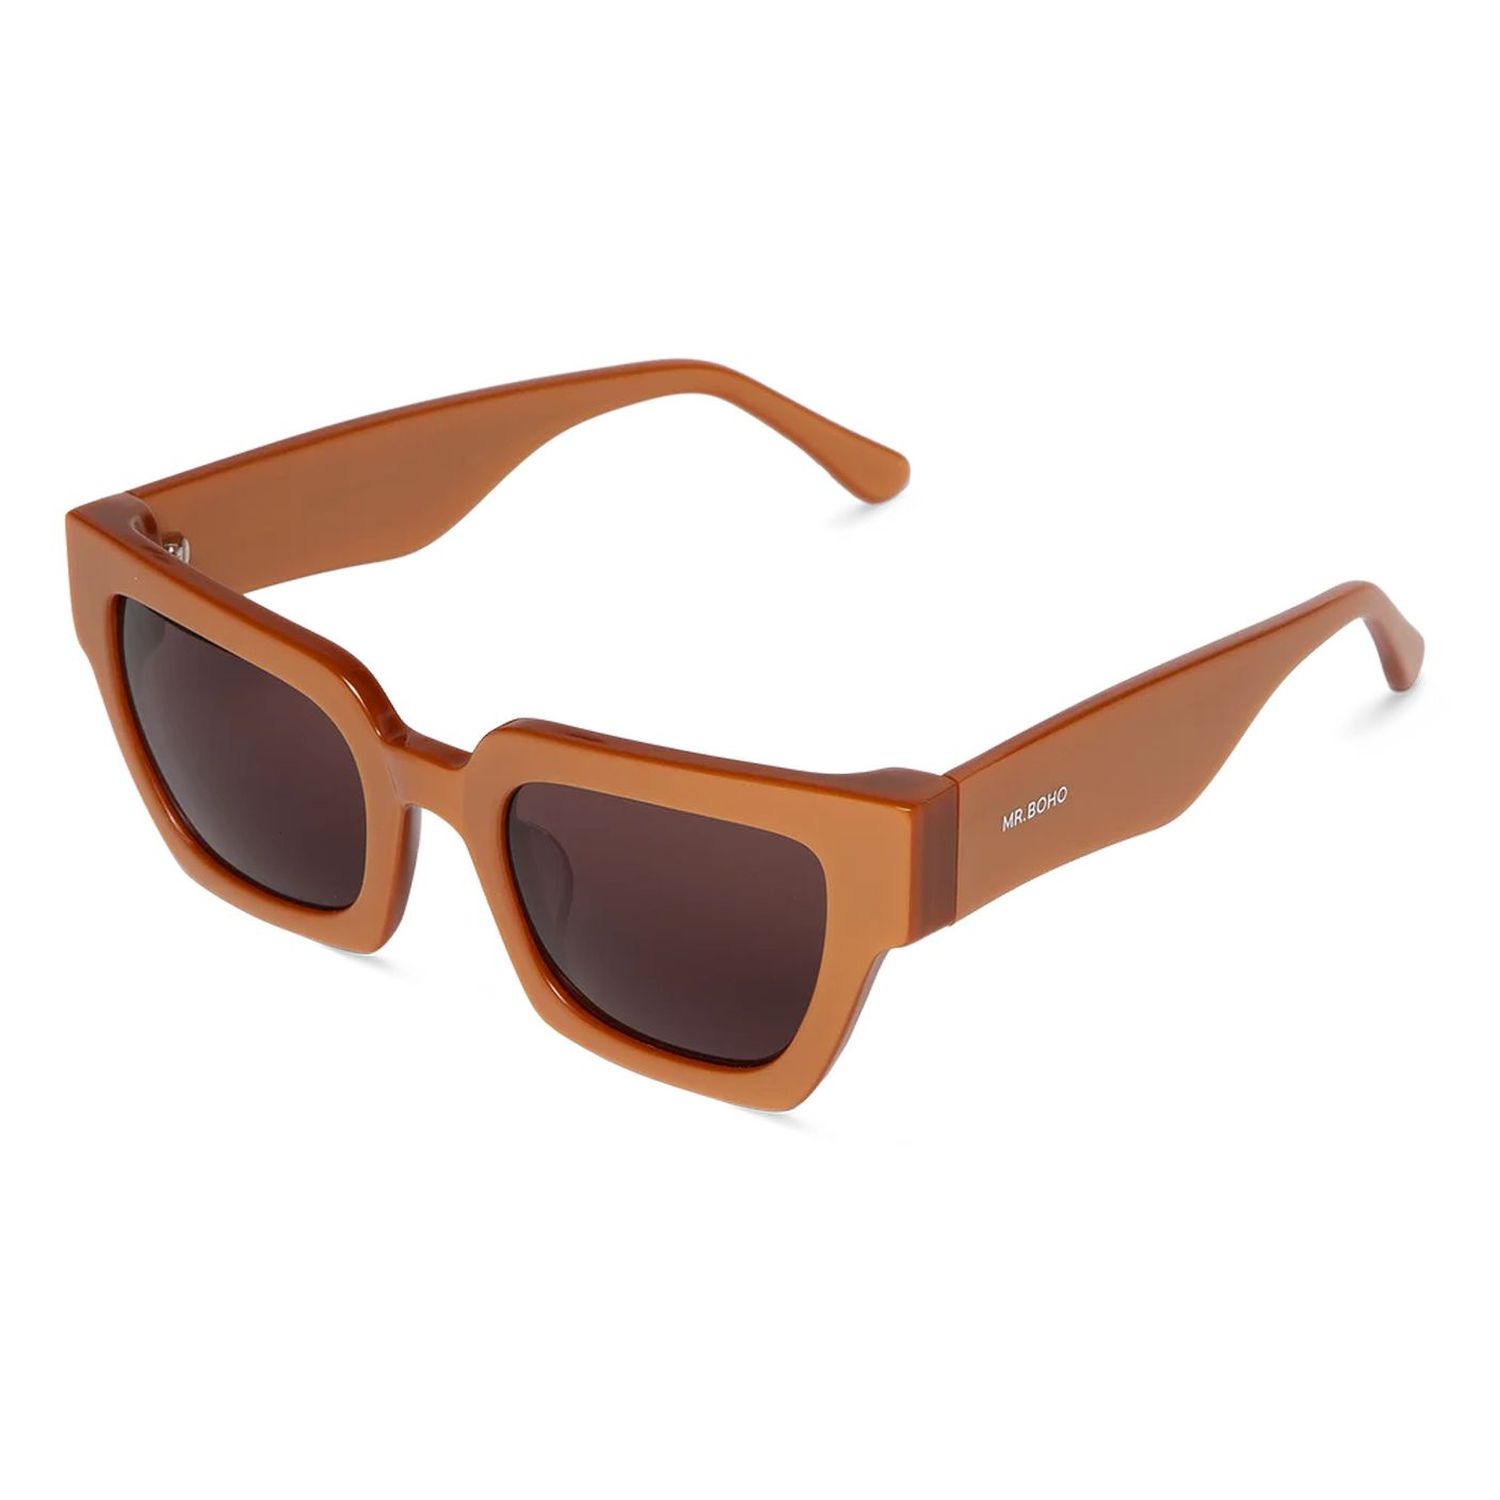 Gafas de sol Mr Boho Frelard Copper con lentes clásicas - Óptica Doñana  Visión